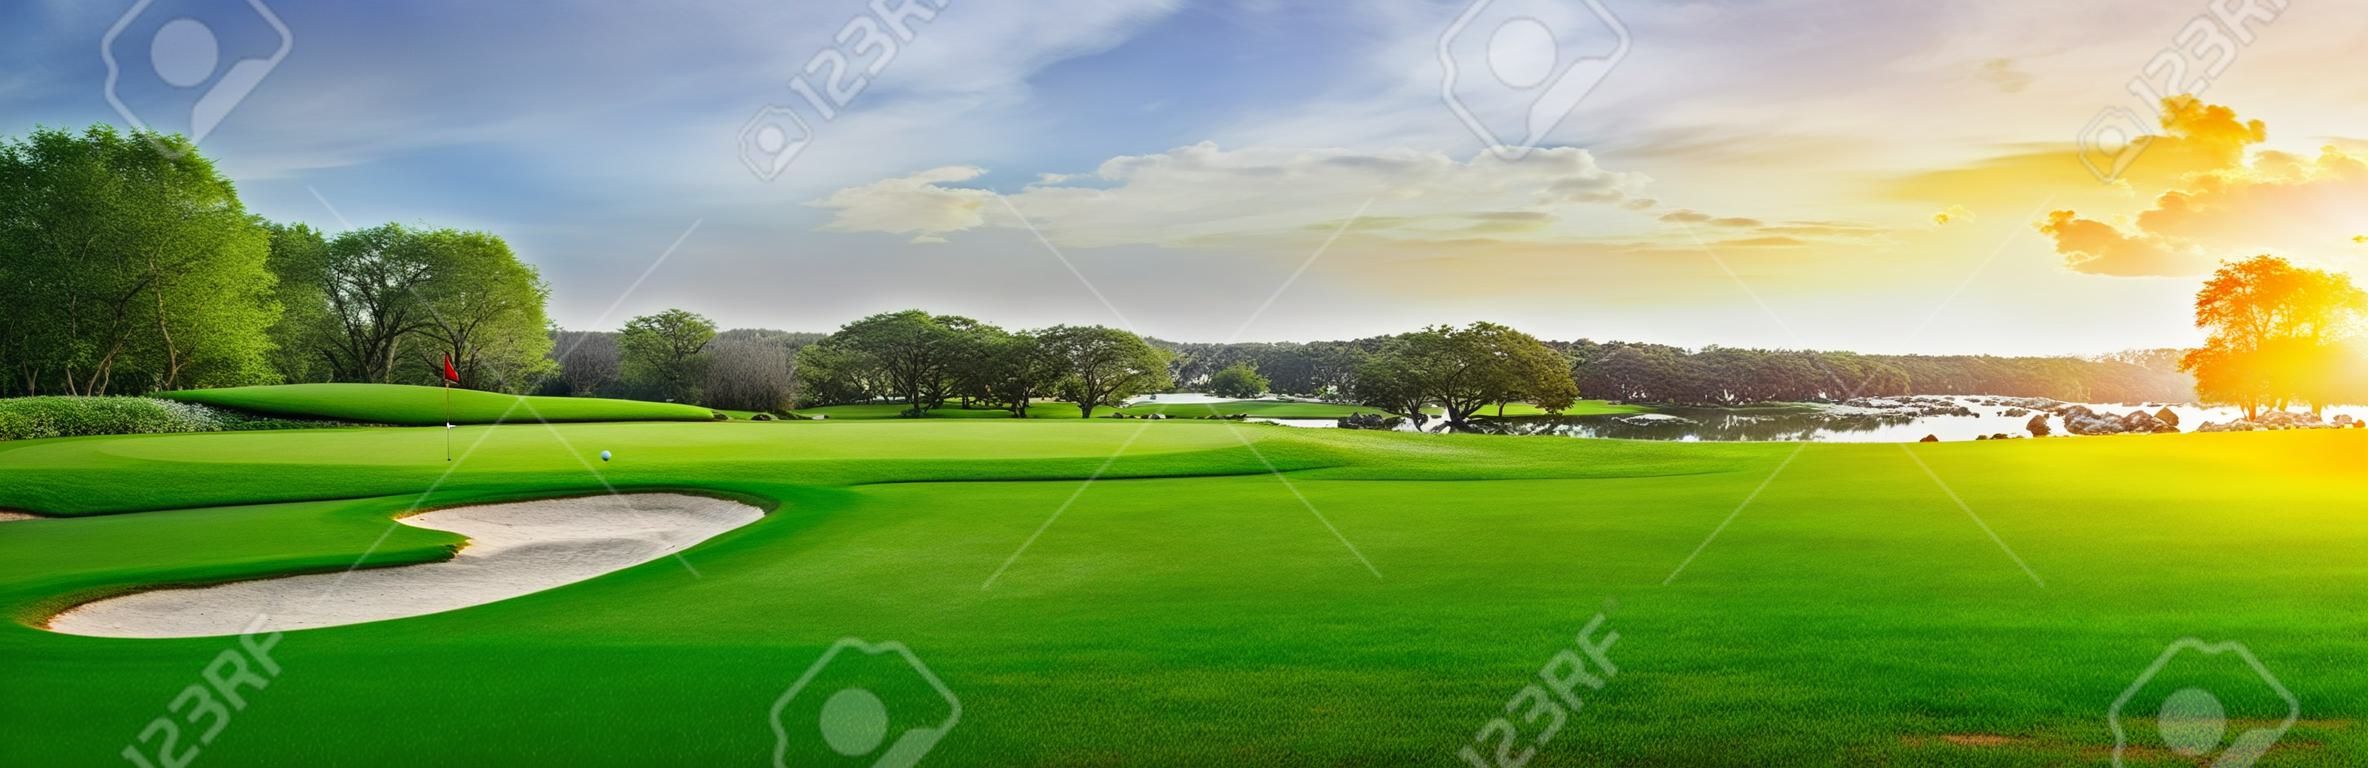 Herbe verte et bois sur un terrain de golf